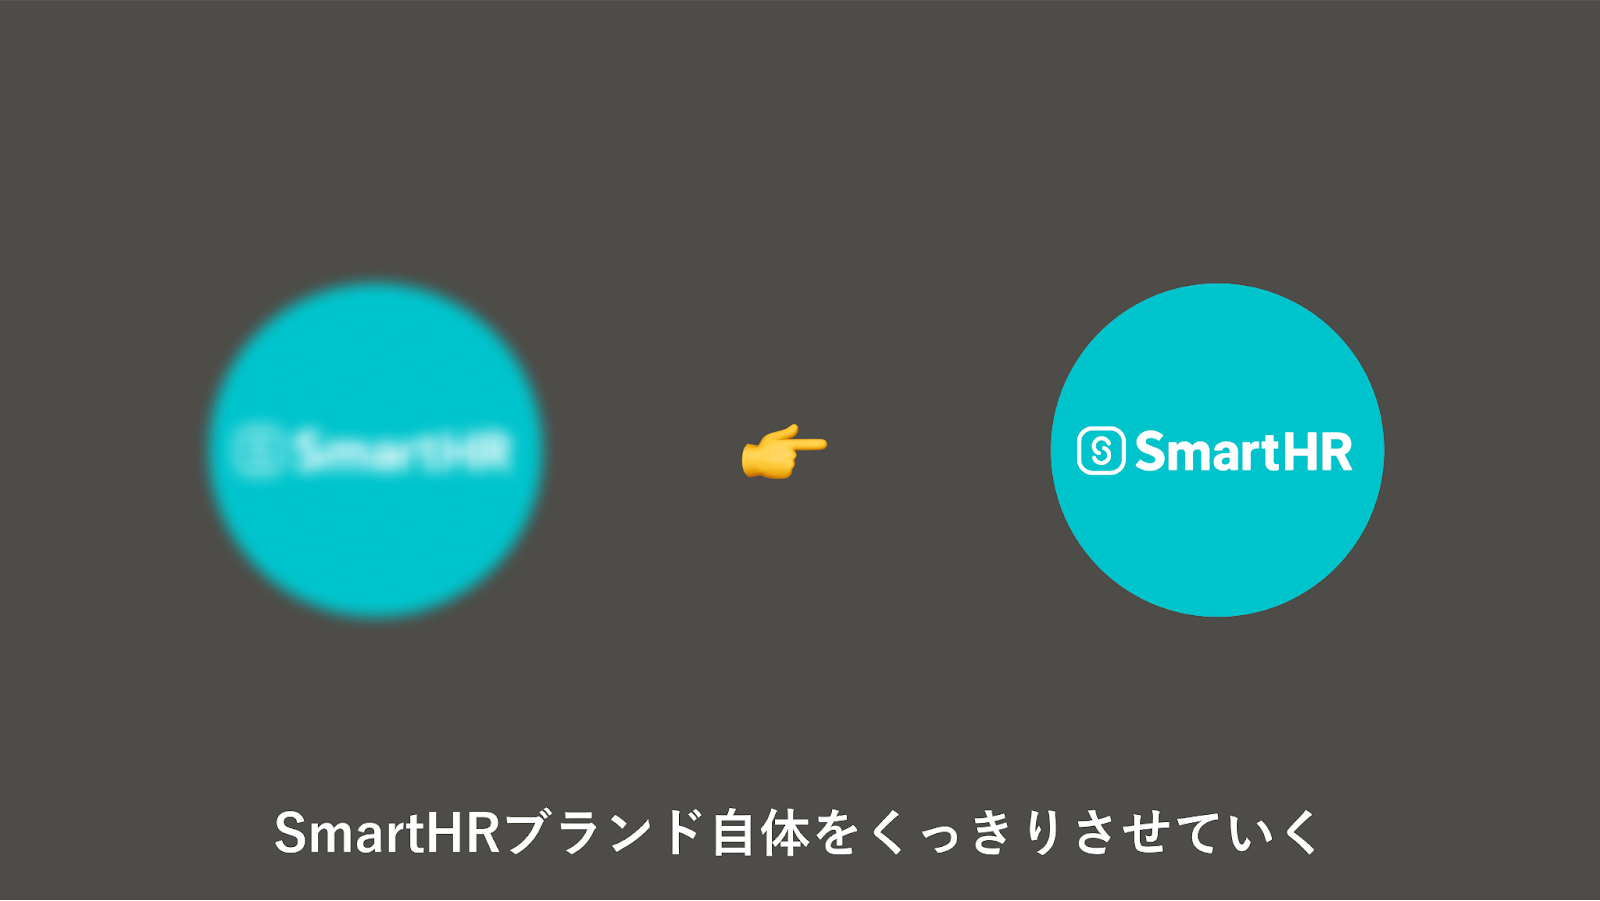 スライドのキャプチャ。中央に、SmartHRロゴが入った円が2つが描かれ、その下に「SmartHRブランド自体をくっきりさせていく」と書かれている。左側の円はぼやけて描かれ、右側の円はくっきりと描かれている。そして、左から右へと矢印のアイコンが配置されている。